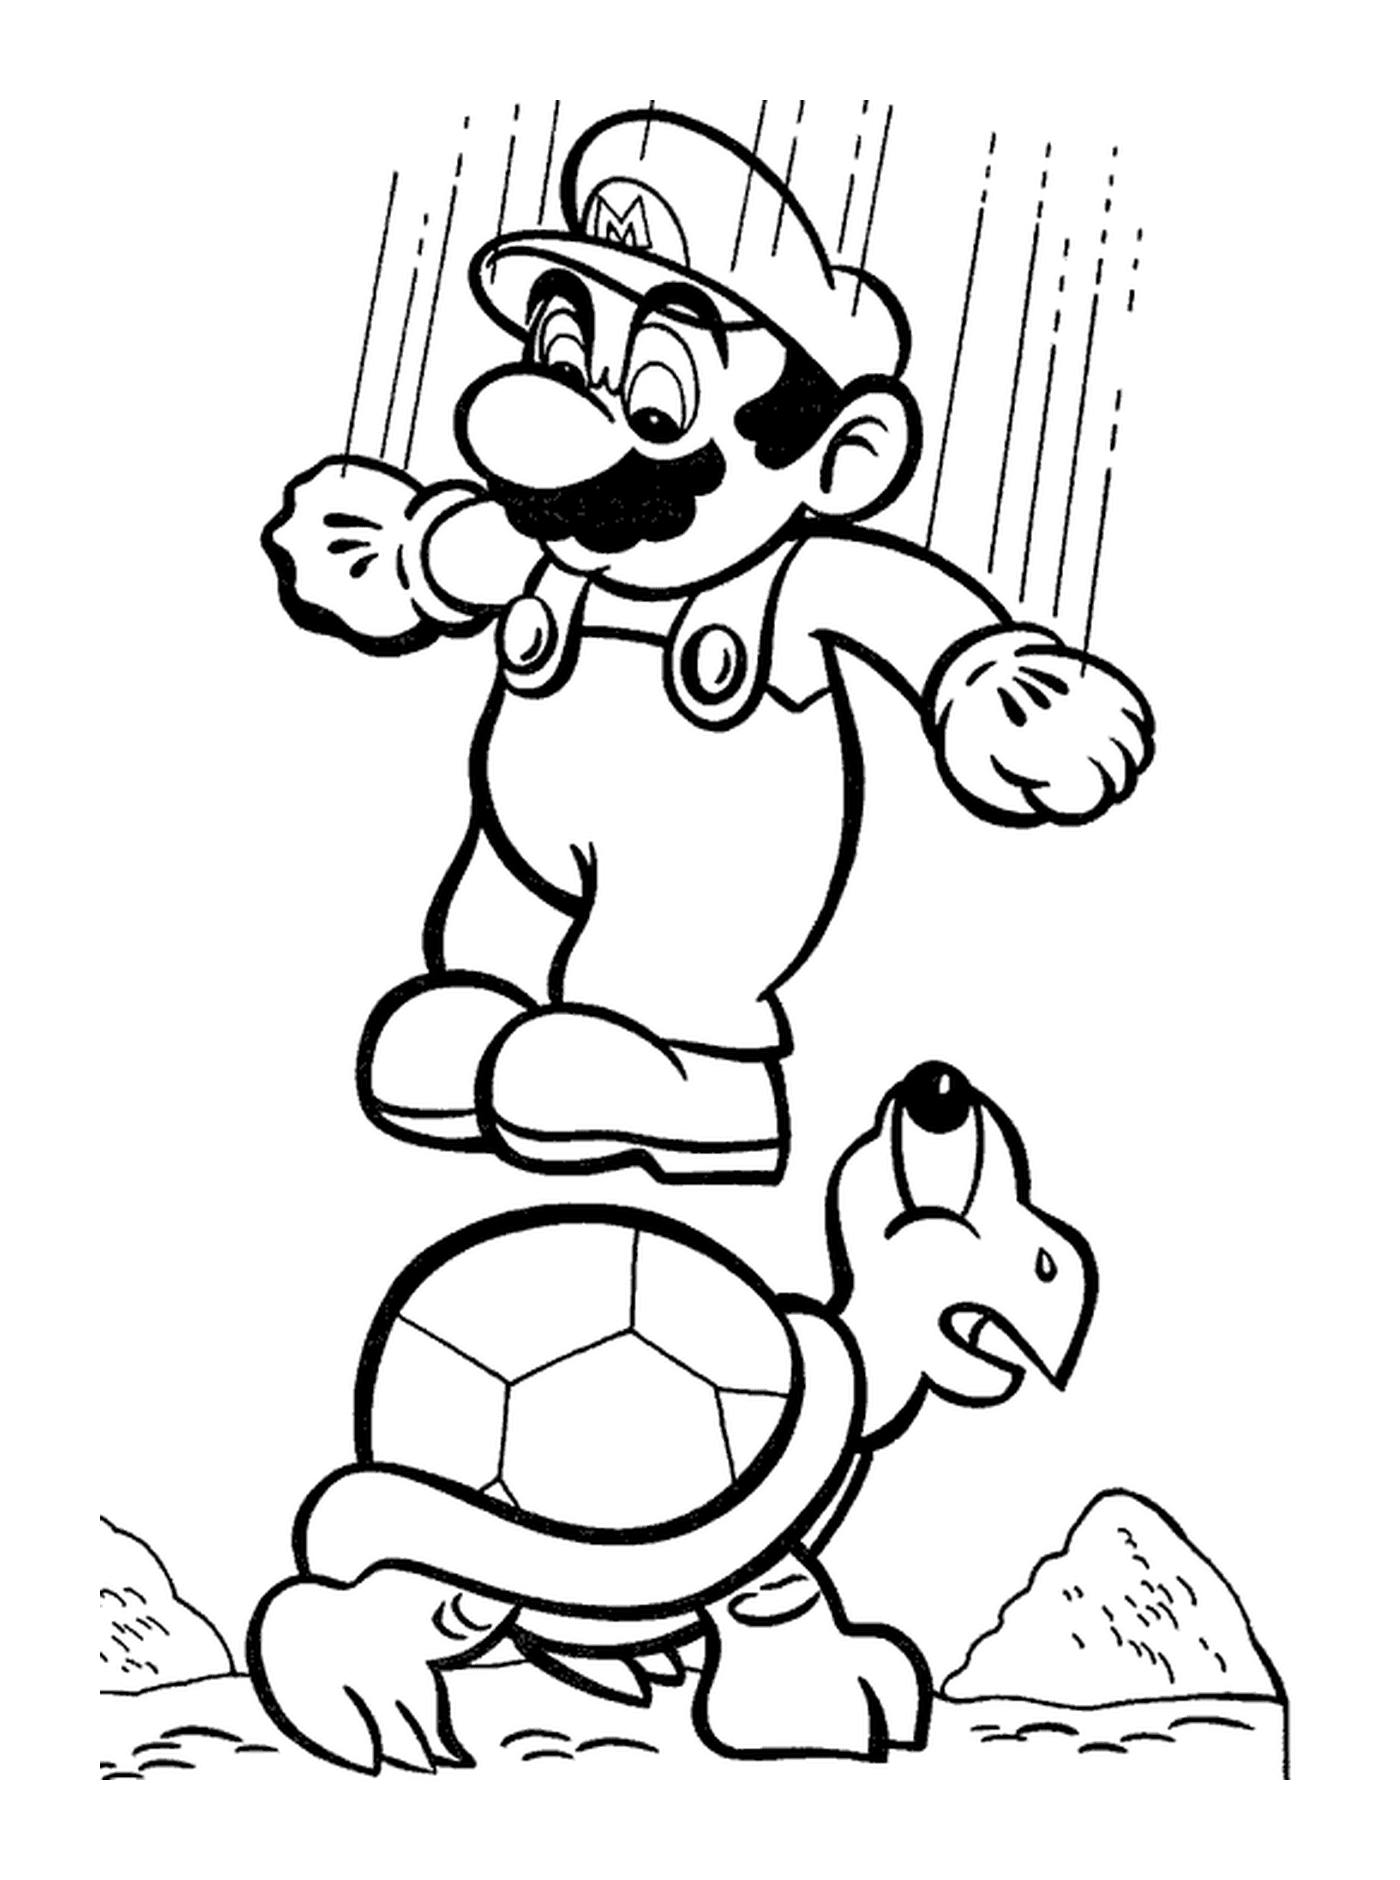  Марио прыгает на черепаху, играя в футбол 